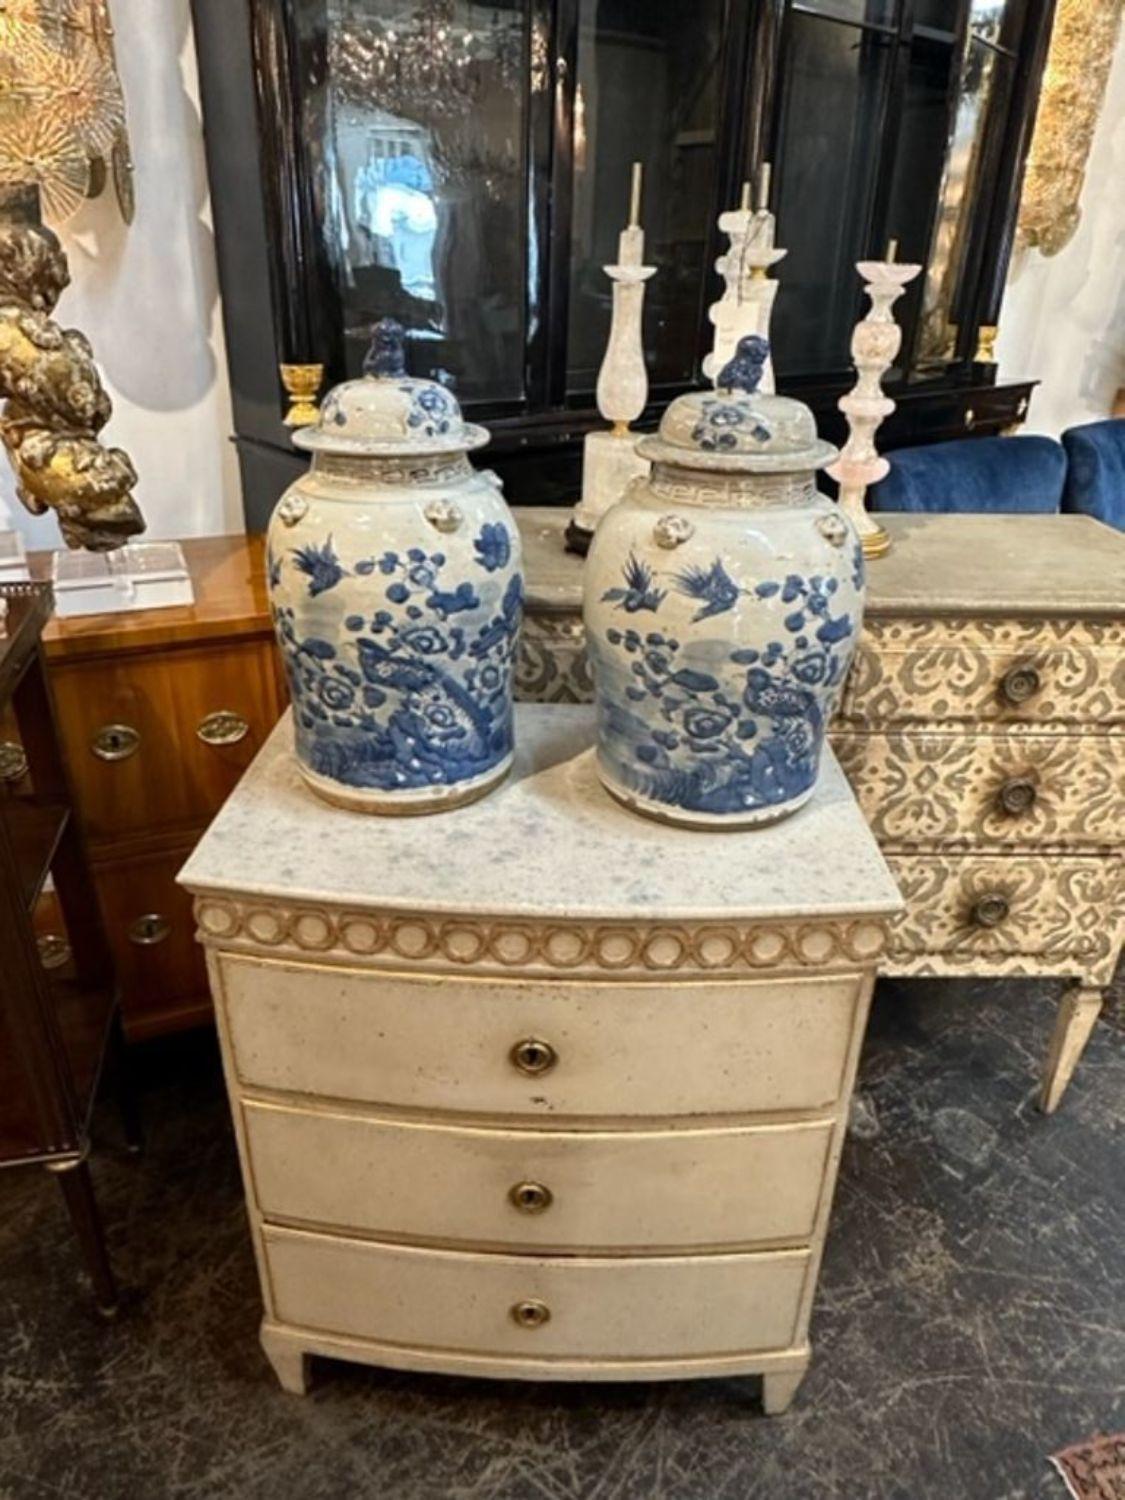 Whiting, paire de jarres chinoises en porcelaine bleue et blanche. De jolies images d'oiseaux et de fleurs.  Un accessoire fabuleux !